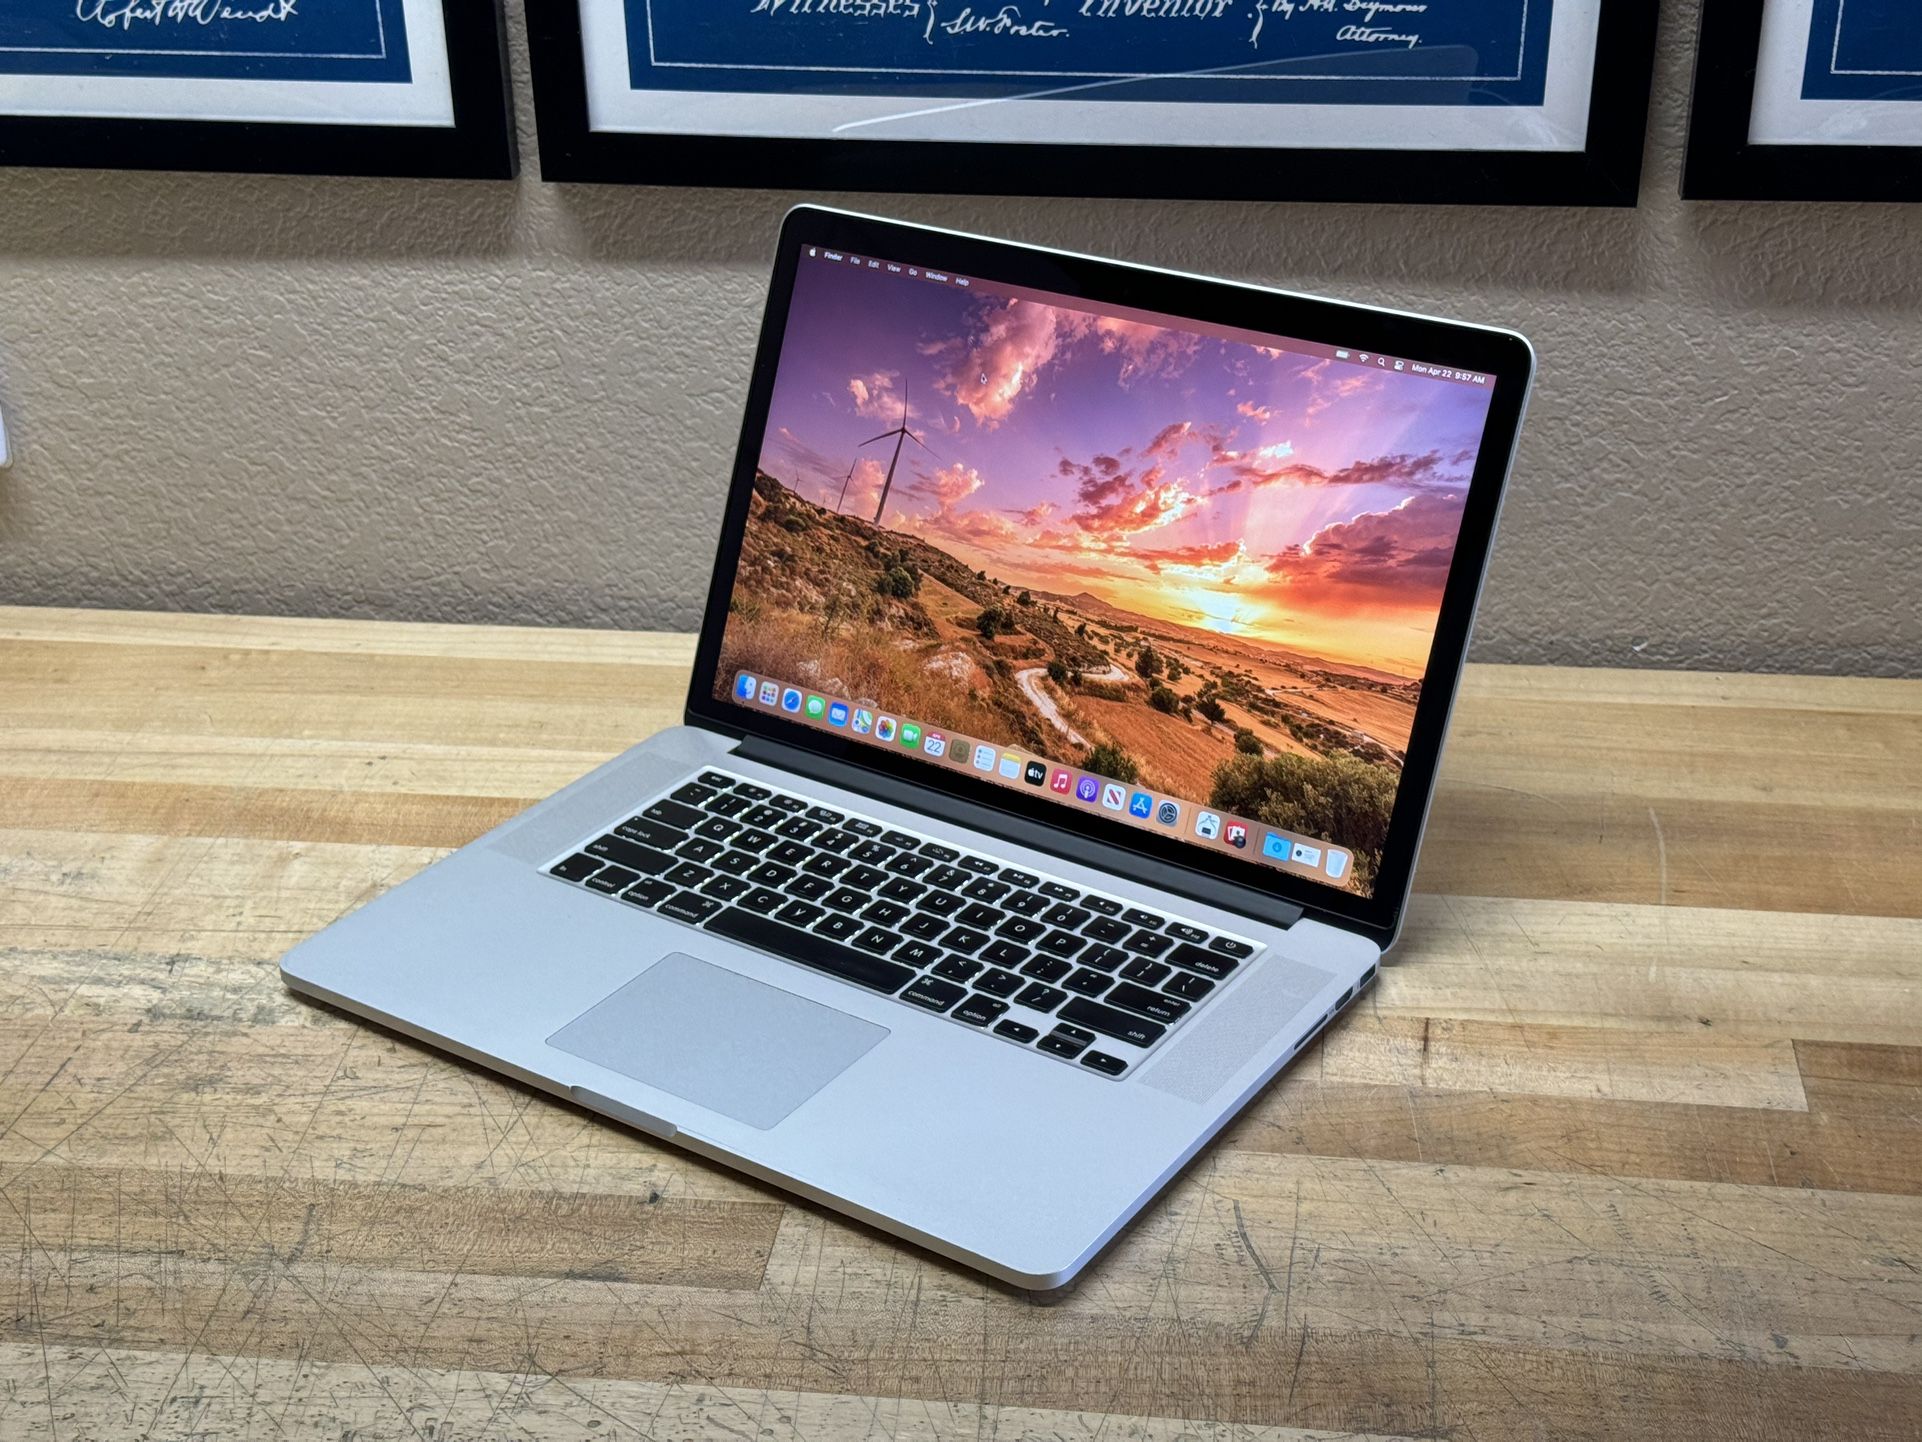 2014 15” MacBook Pro Retina - 2.5 GHz i7 - 16GB - 500GB - 2GB GPU